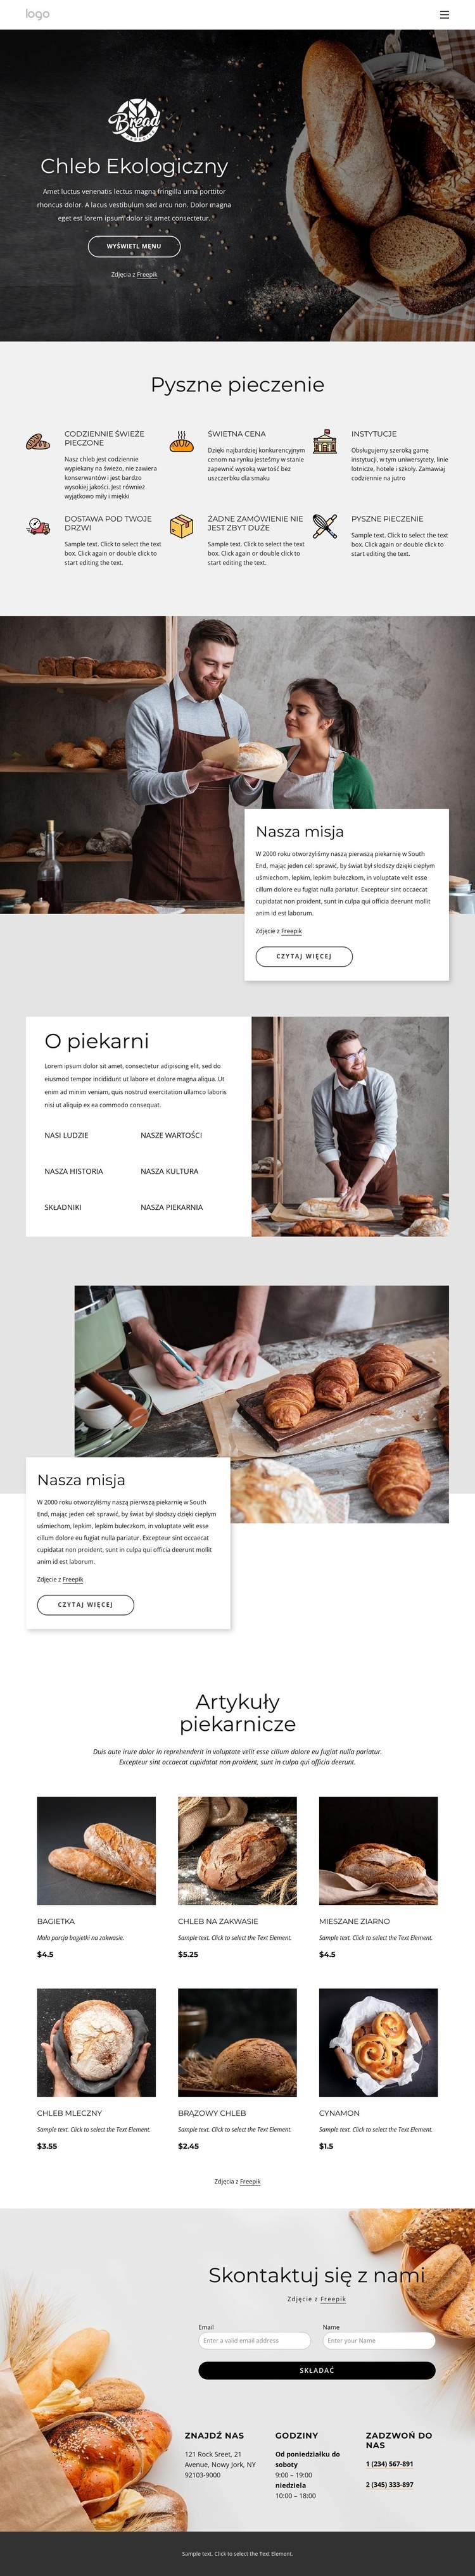 Bajgle, bułki, bułki, herbatniki i bochenki chleba Makieta strony internetowej